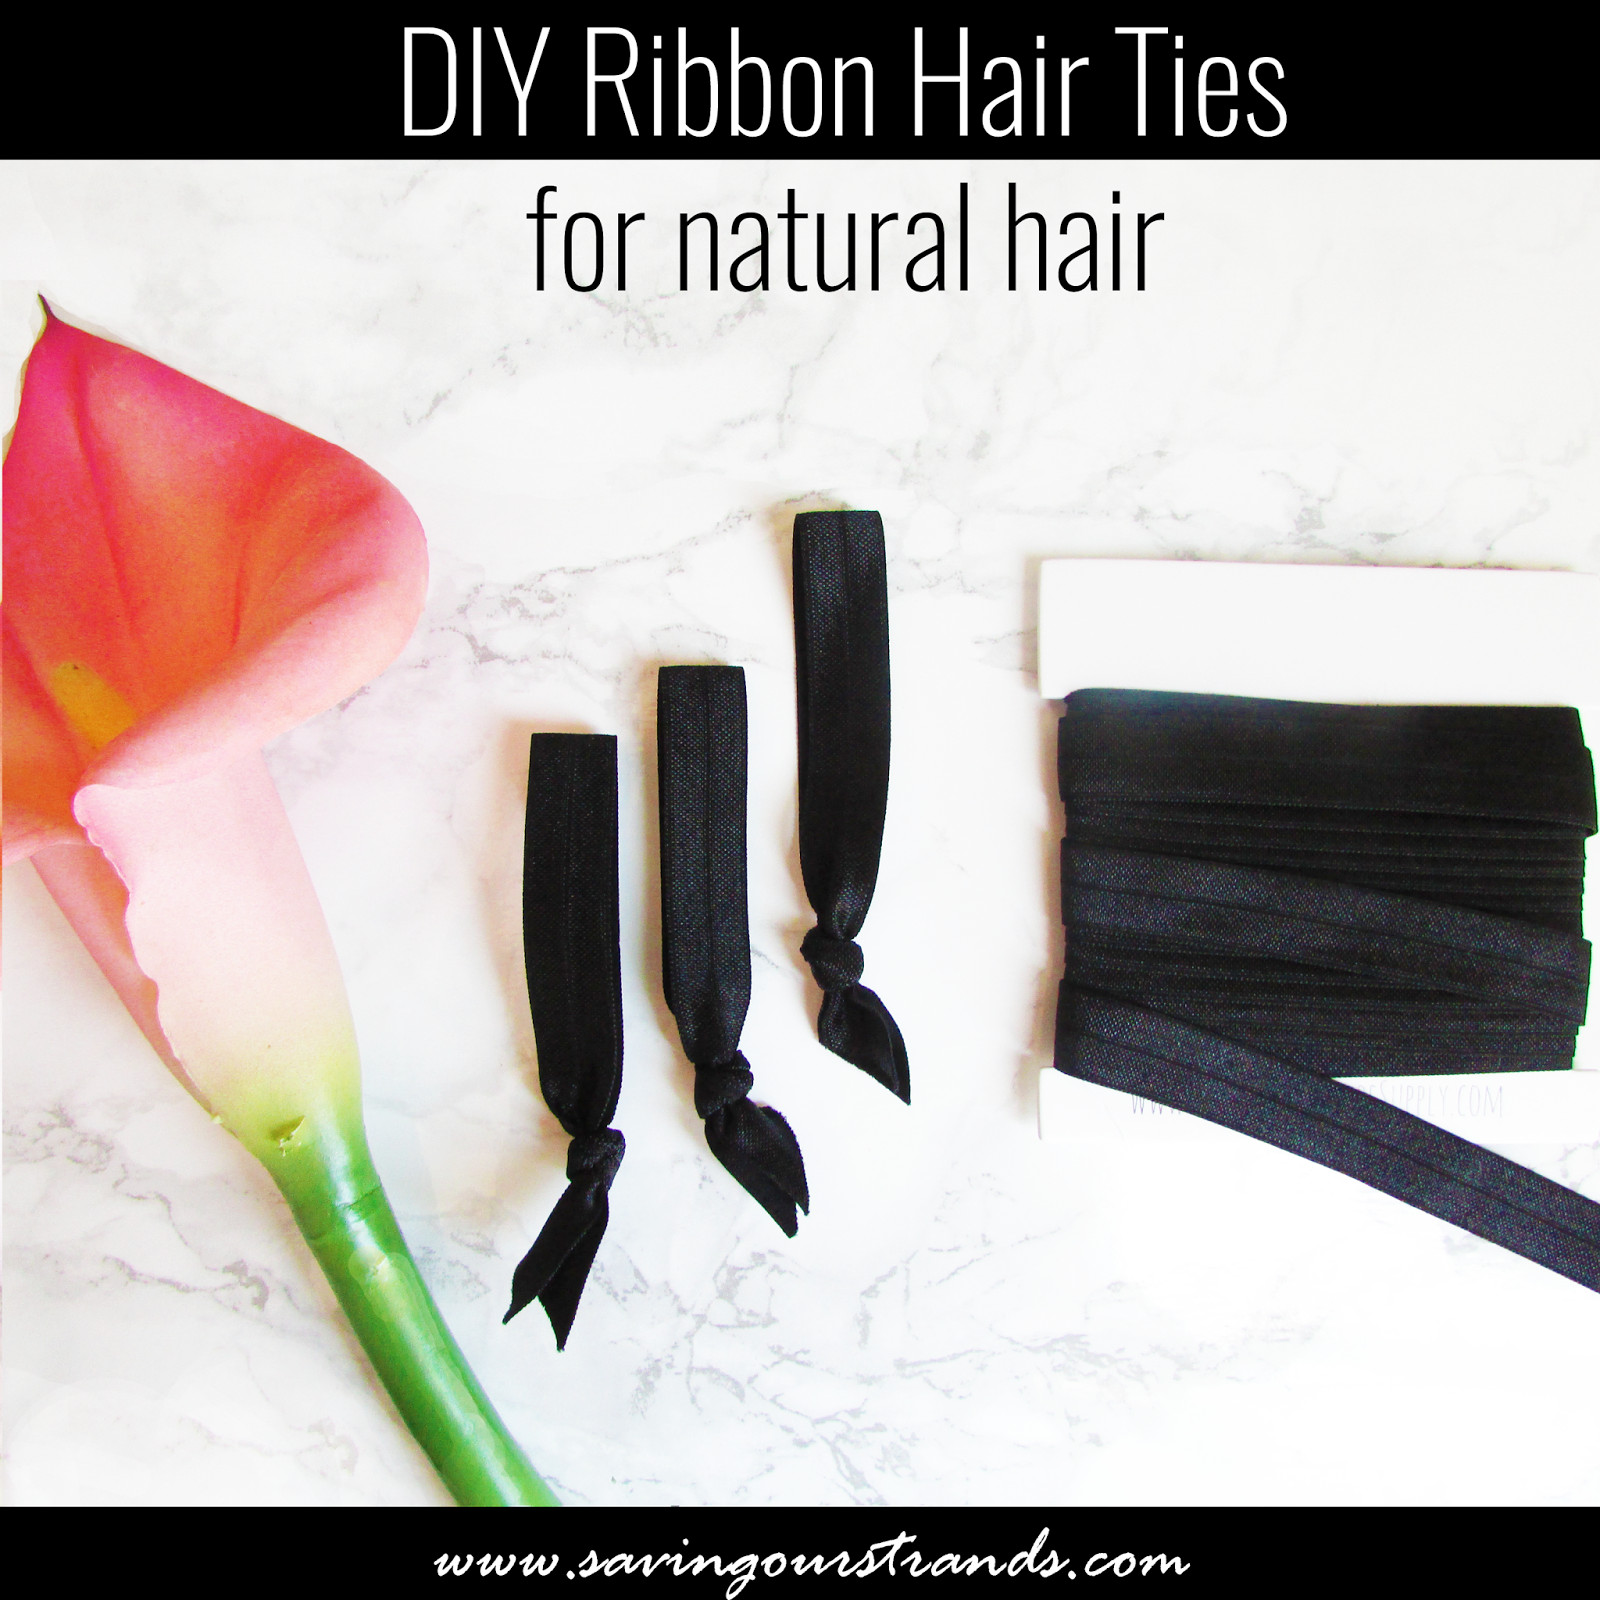 Ribbon Hair Ties DIY
 SavingOurStrands